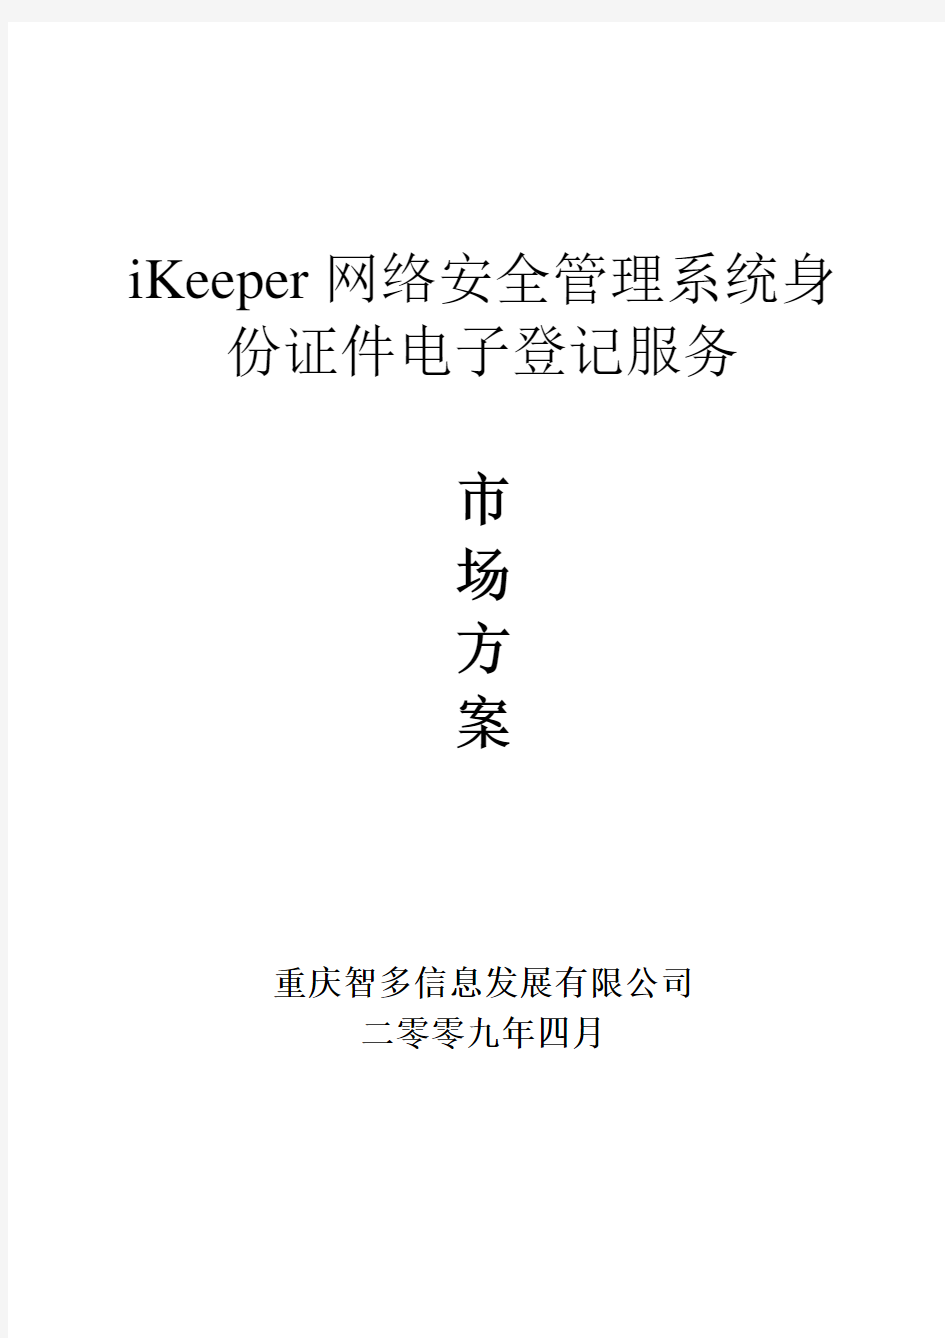 iKeeper网络安全管理系统身份证件电子登记服务